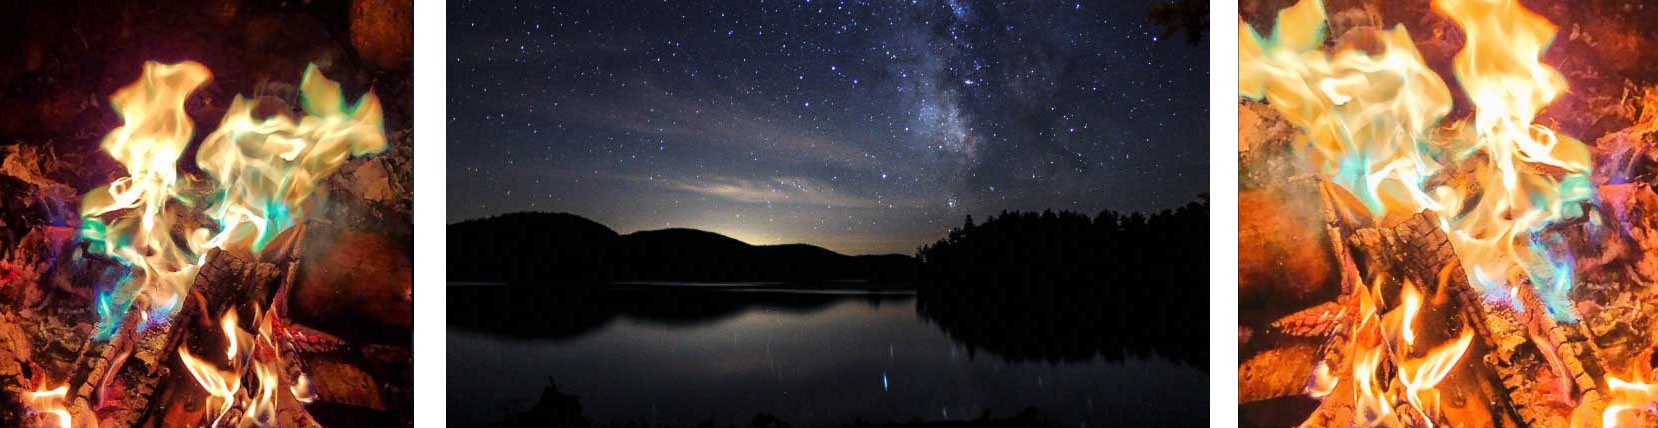 bright campfire and lake reflecting stars at night